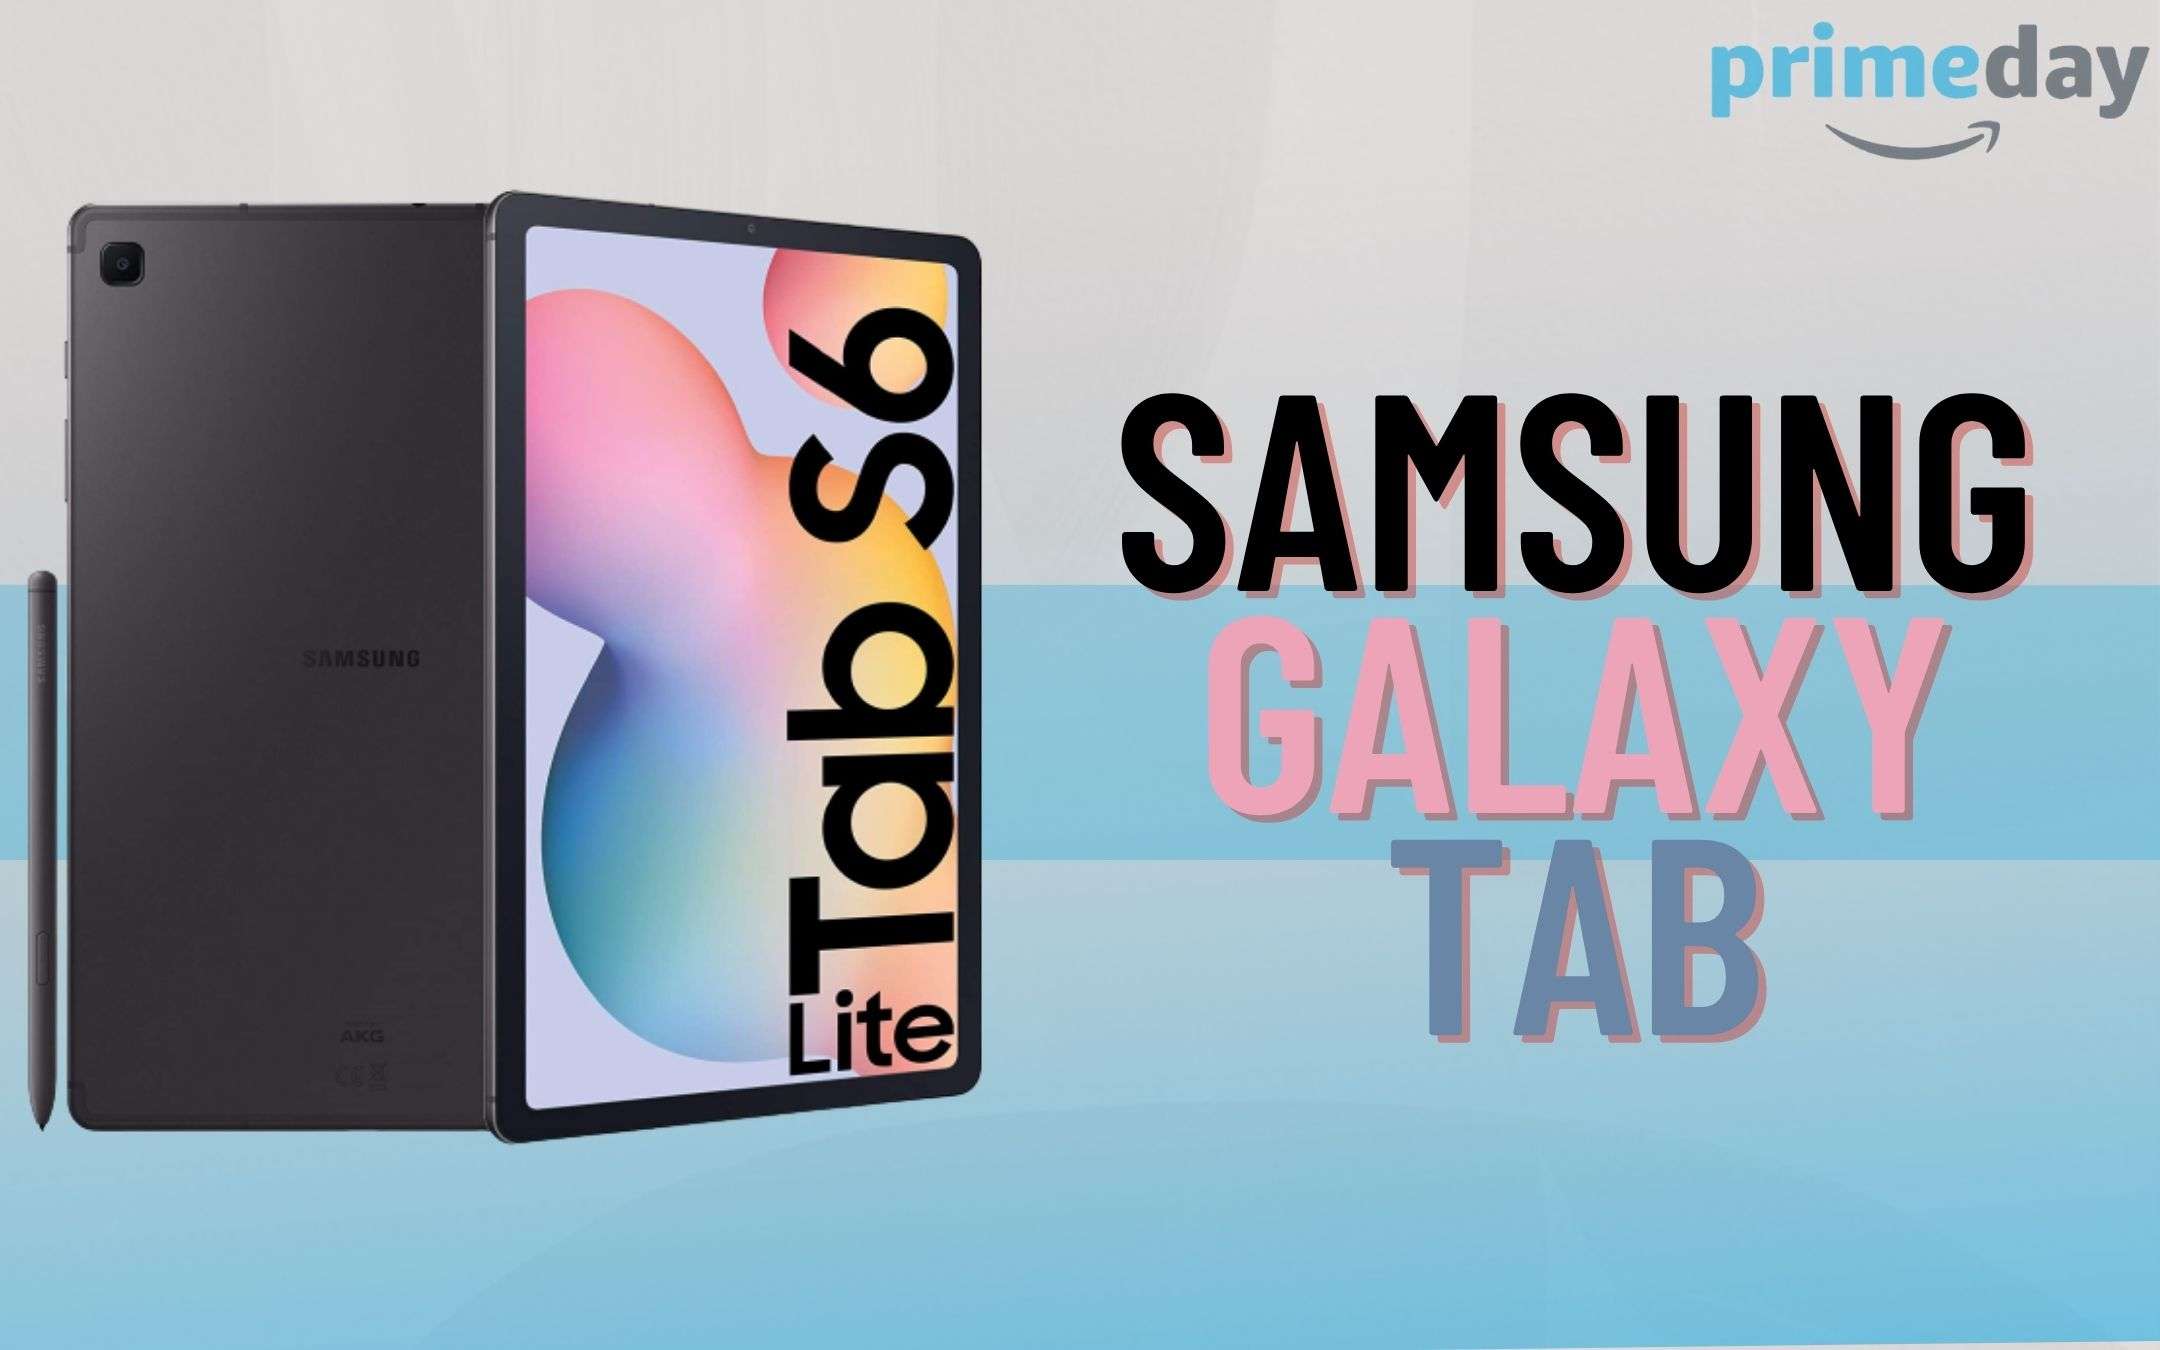 Samsung Galaxy Tab S6 Lite: offerta pazzesca per il Prime Day